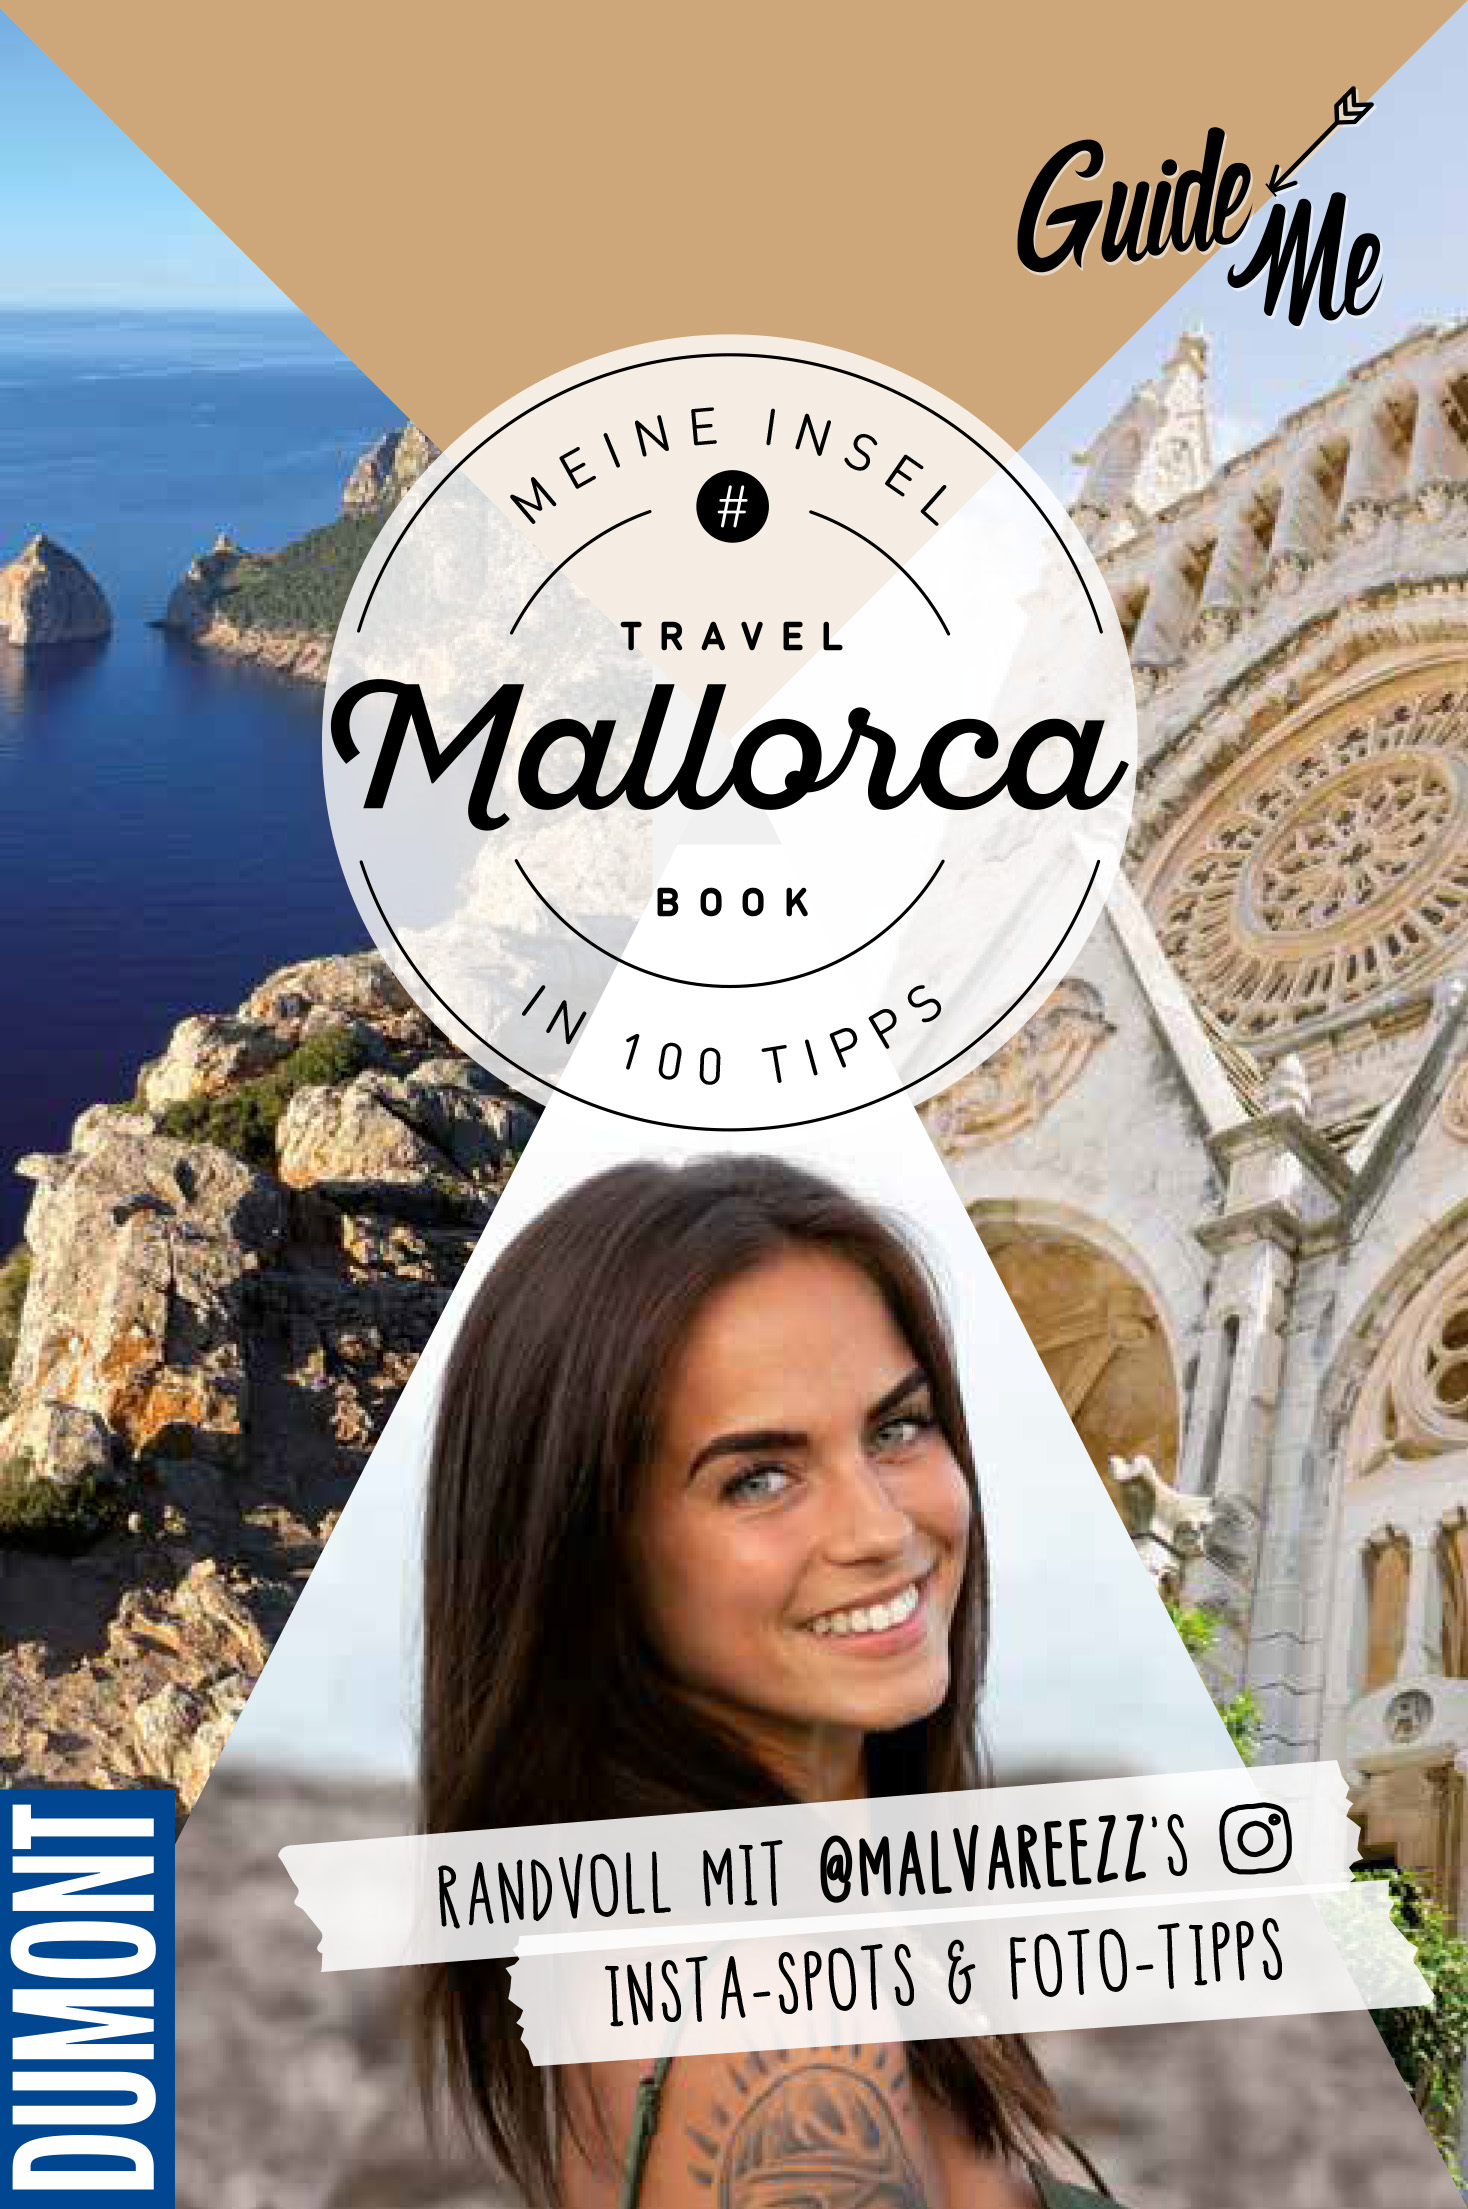 GuideMe TravelBook «Mallorca»